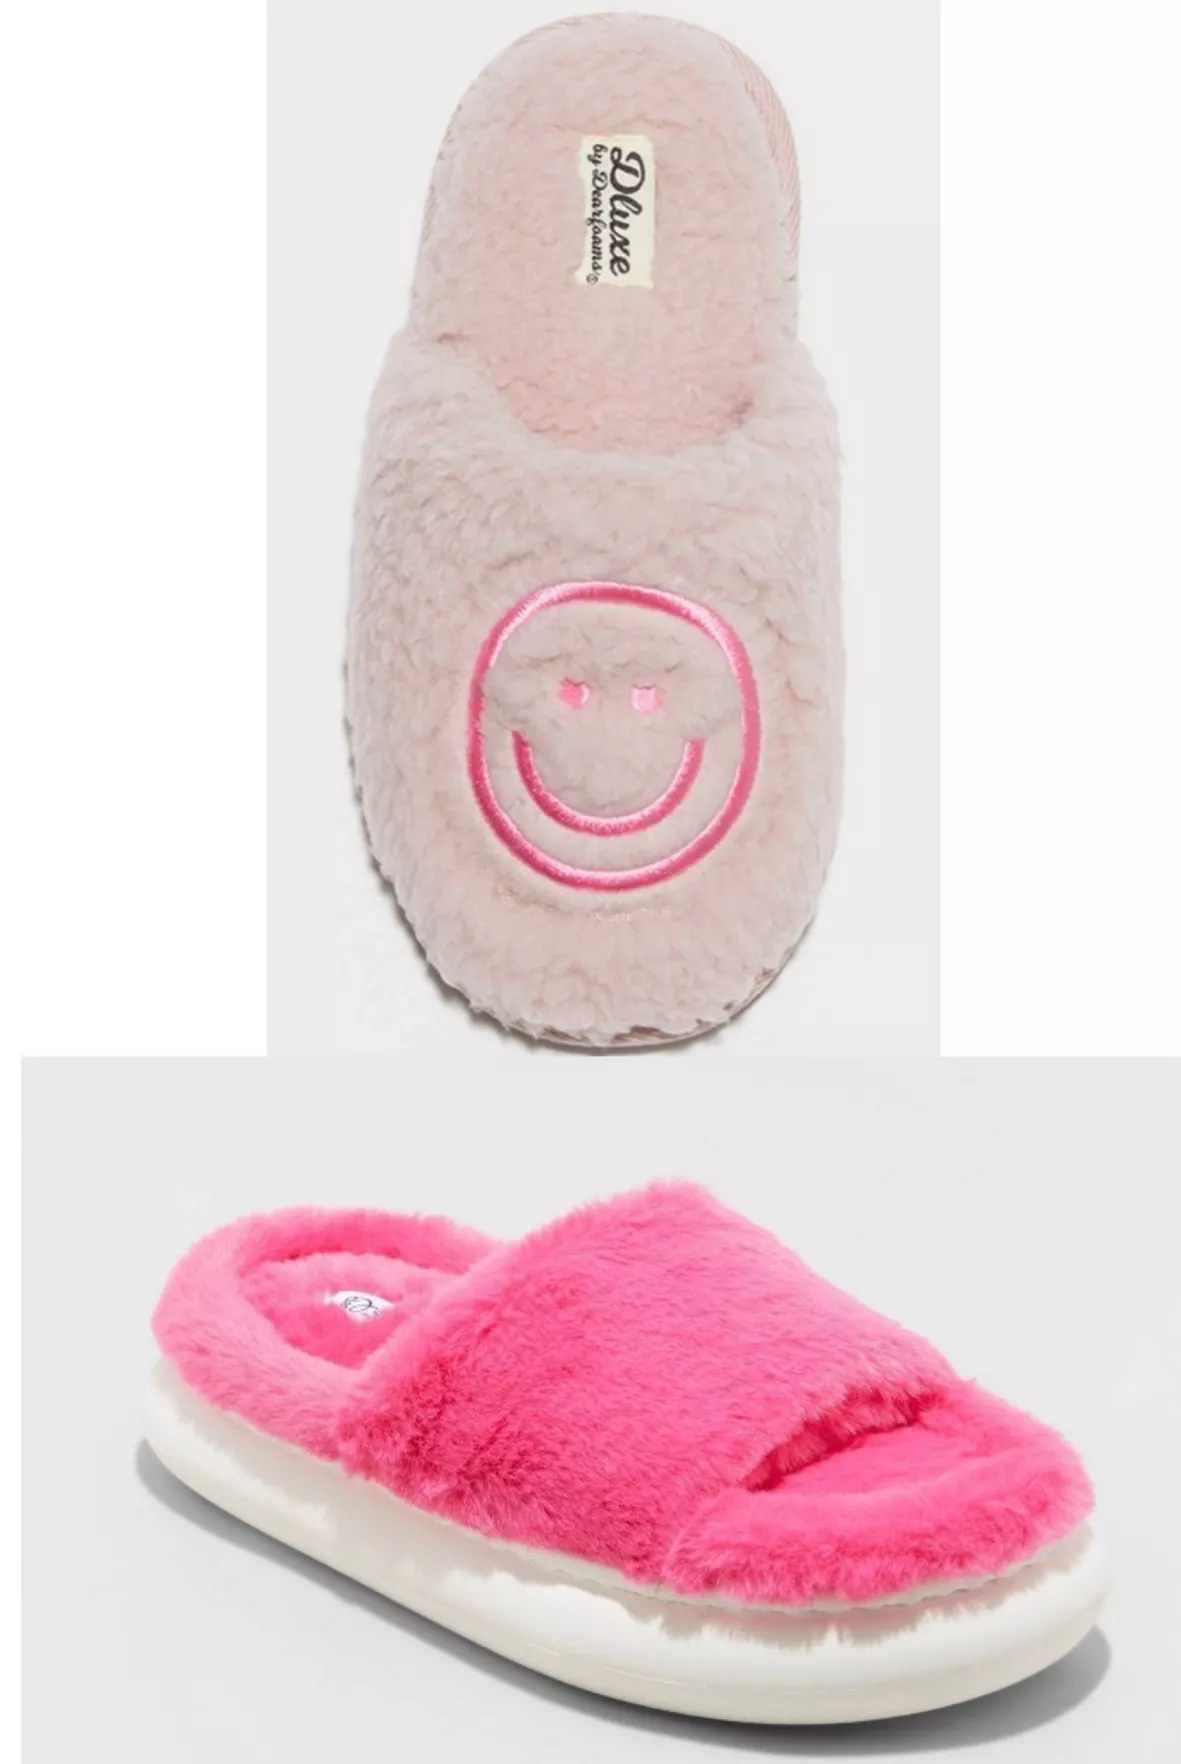 Dluxe By Dearfoams Girls' Happy Face Scuff Slippers - Light Pink